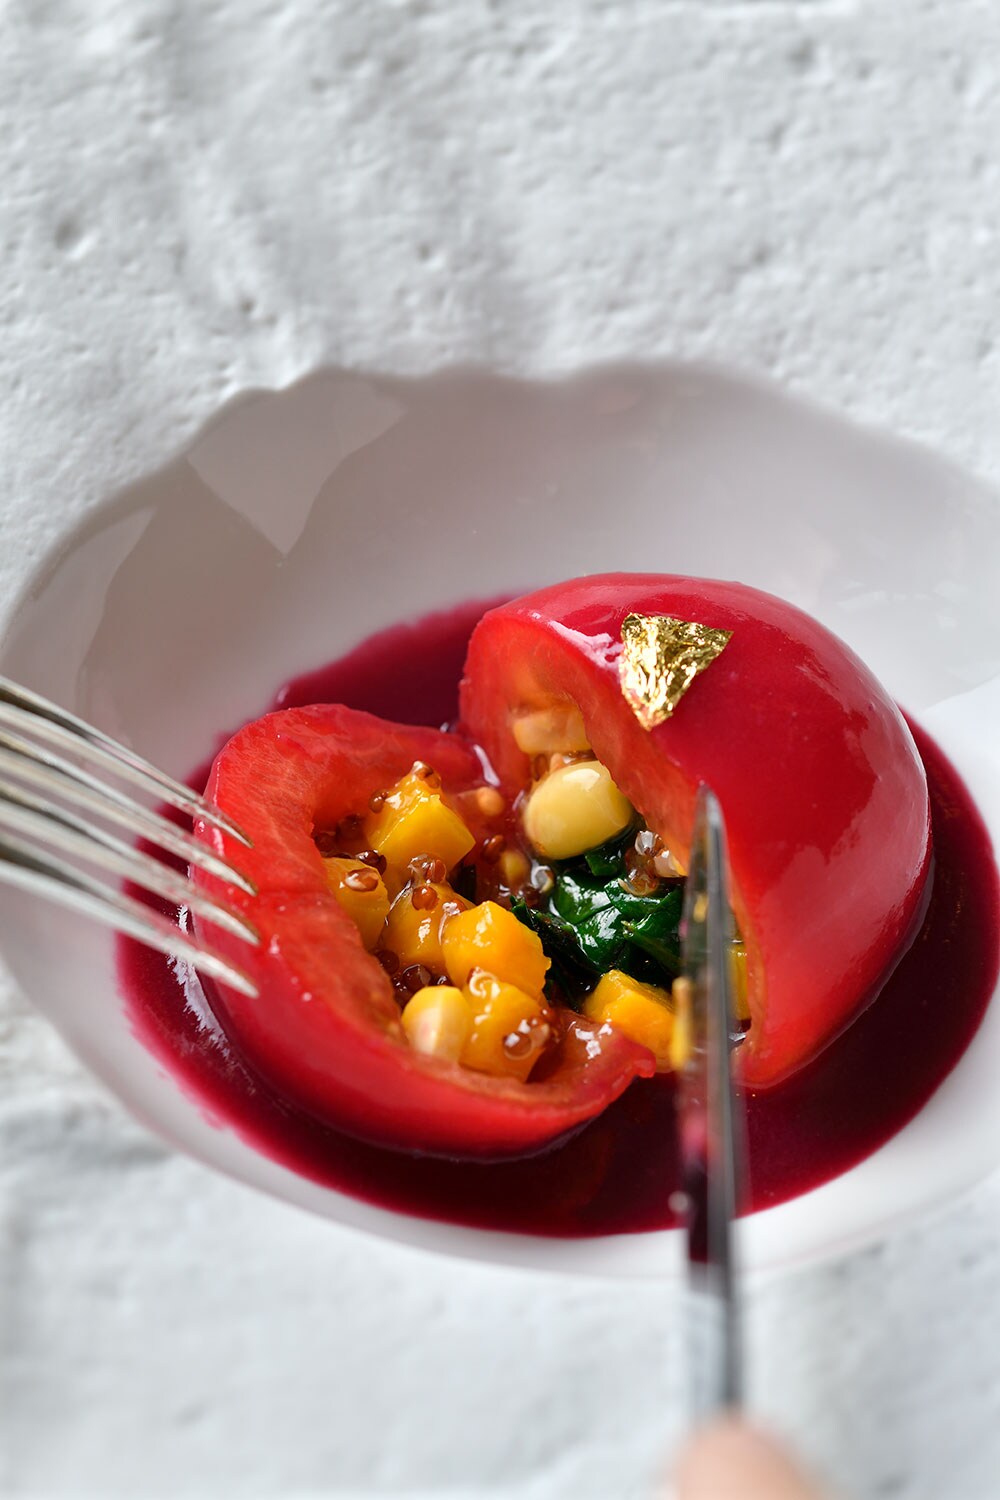 スーパーフードのキヌアを詰めて蒸した日本産トマト、ムラサキイモのペーストを添えて。